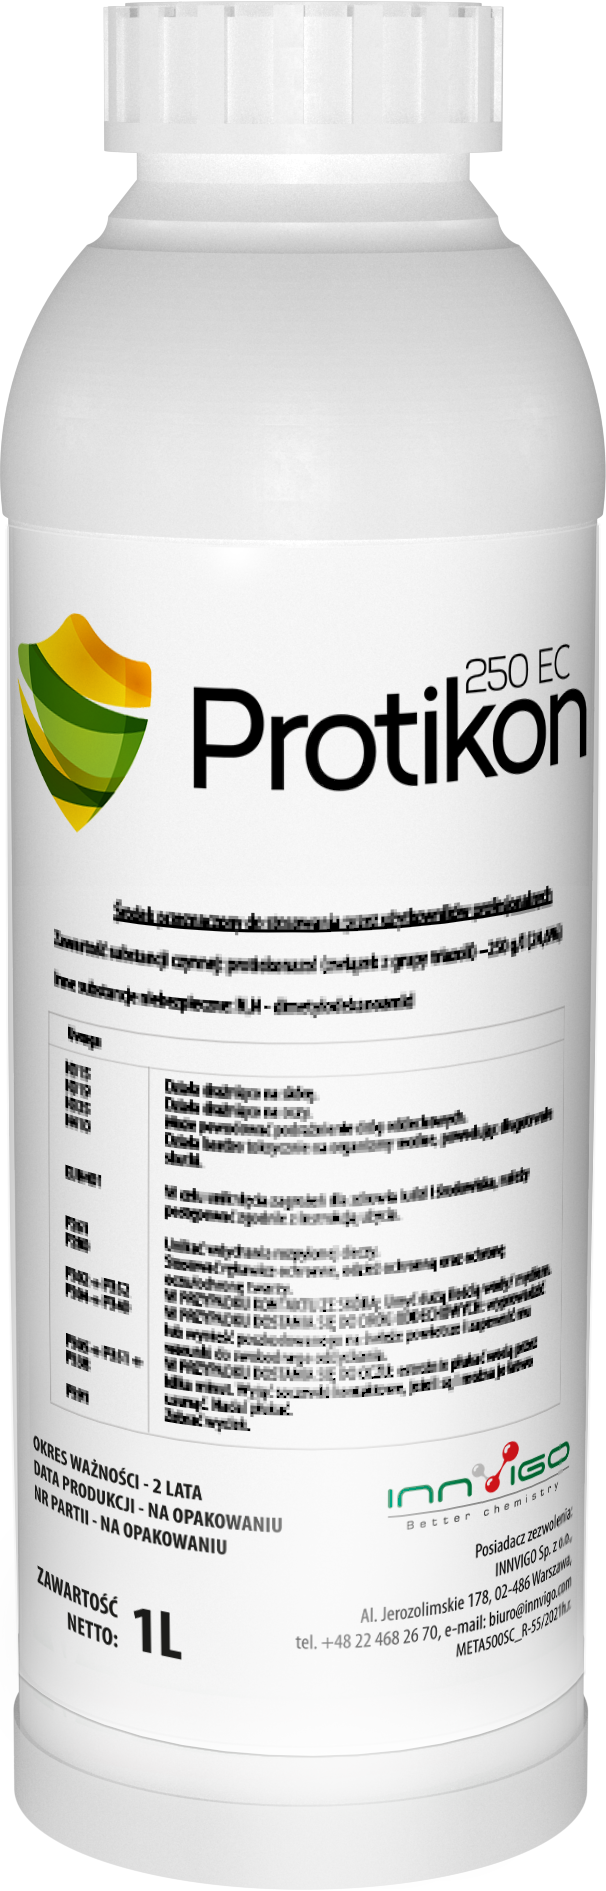 Protikon - Fungicydy na zboża ozime - ochrona pszenicy ozimej przed chorobami grzybowymi